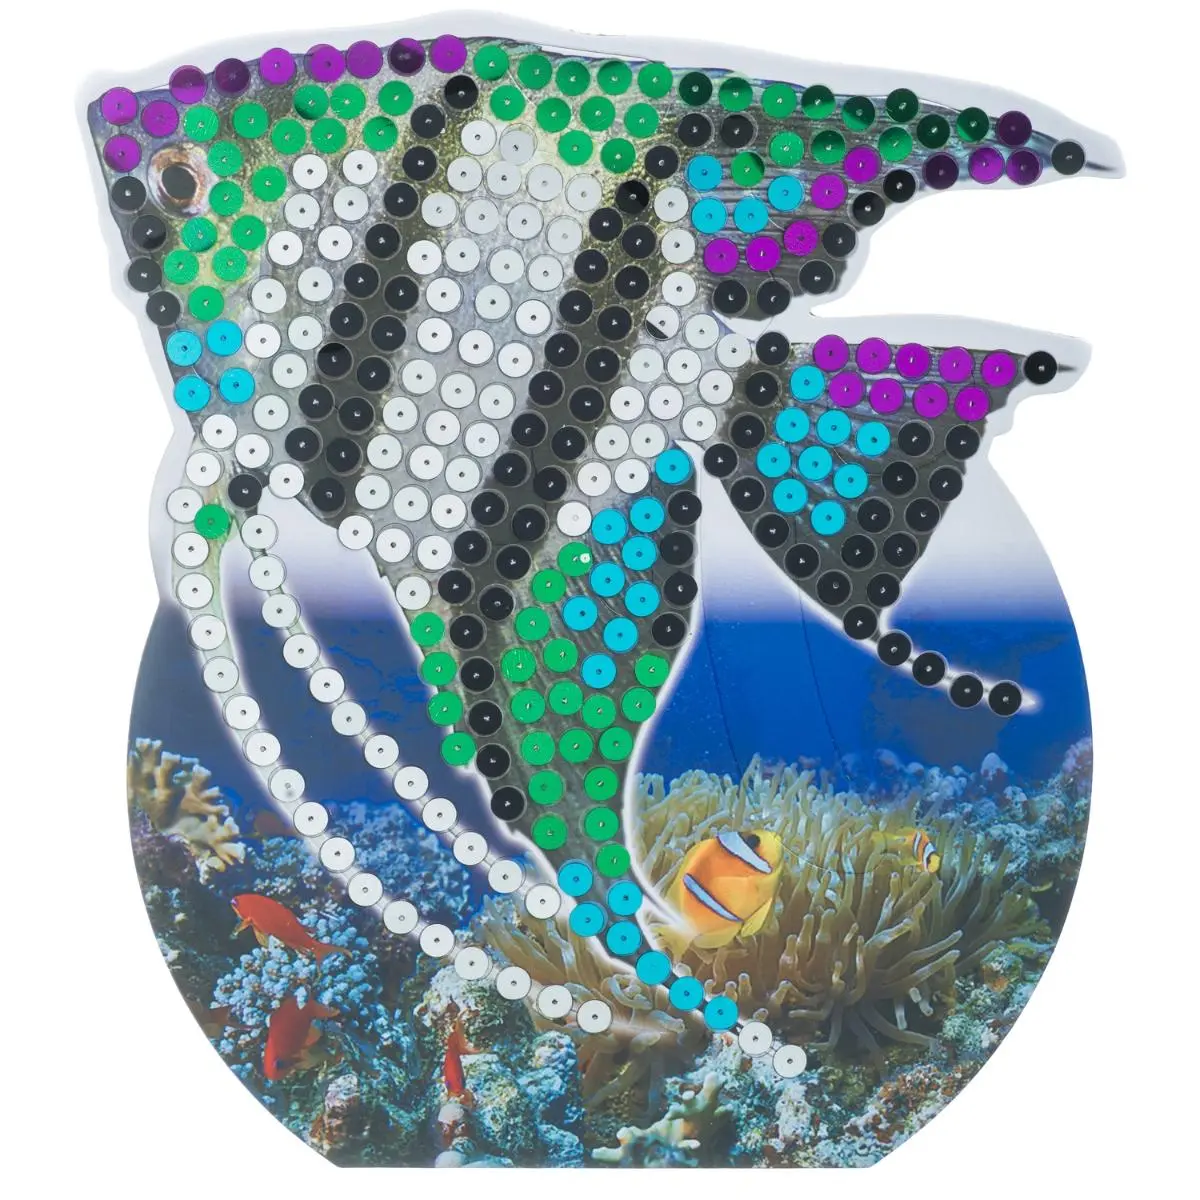 Набор для творчества "3D картина" Экзотические рыбки (4 дизайна) - фото